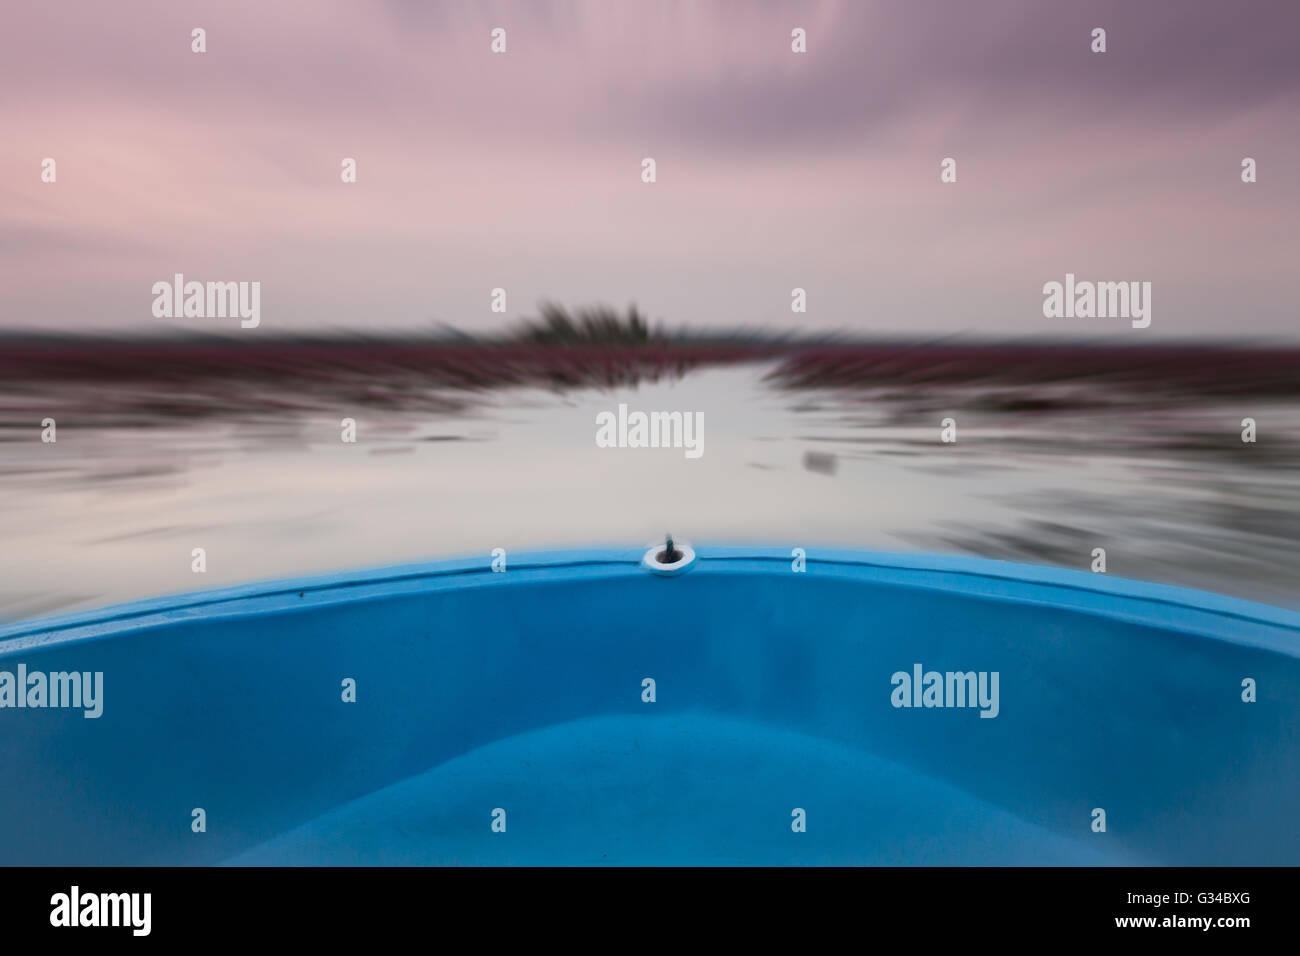 Piccola barca nel lago di red lotus con blur sullo sfondo, stock photo Foto Stock